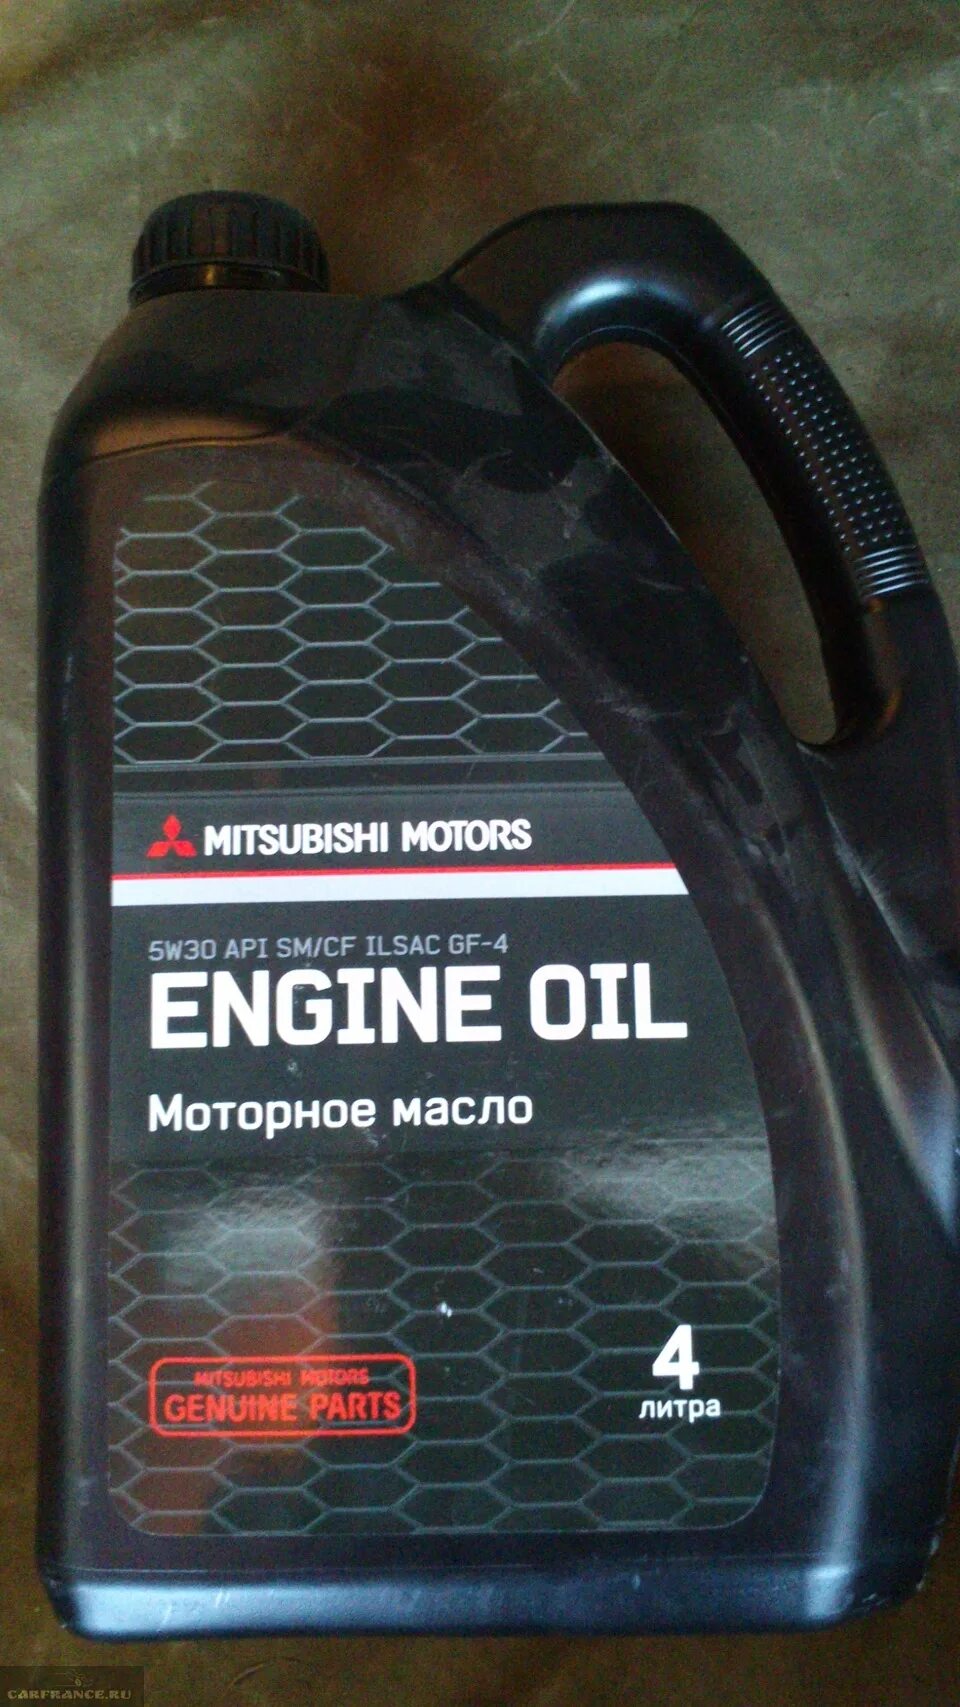 Митсубиси Лансер 9 масло двигатель. Оригинальное моторное масло для Митсубиси Лансер 10. Масло для Митсубиси Лансер 9 1.6. Моторное масло для Митсубиси Лансер 9 1.6.